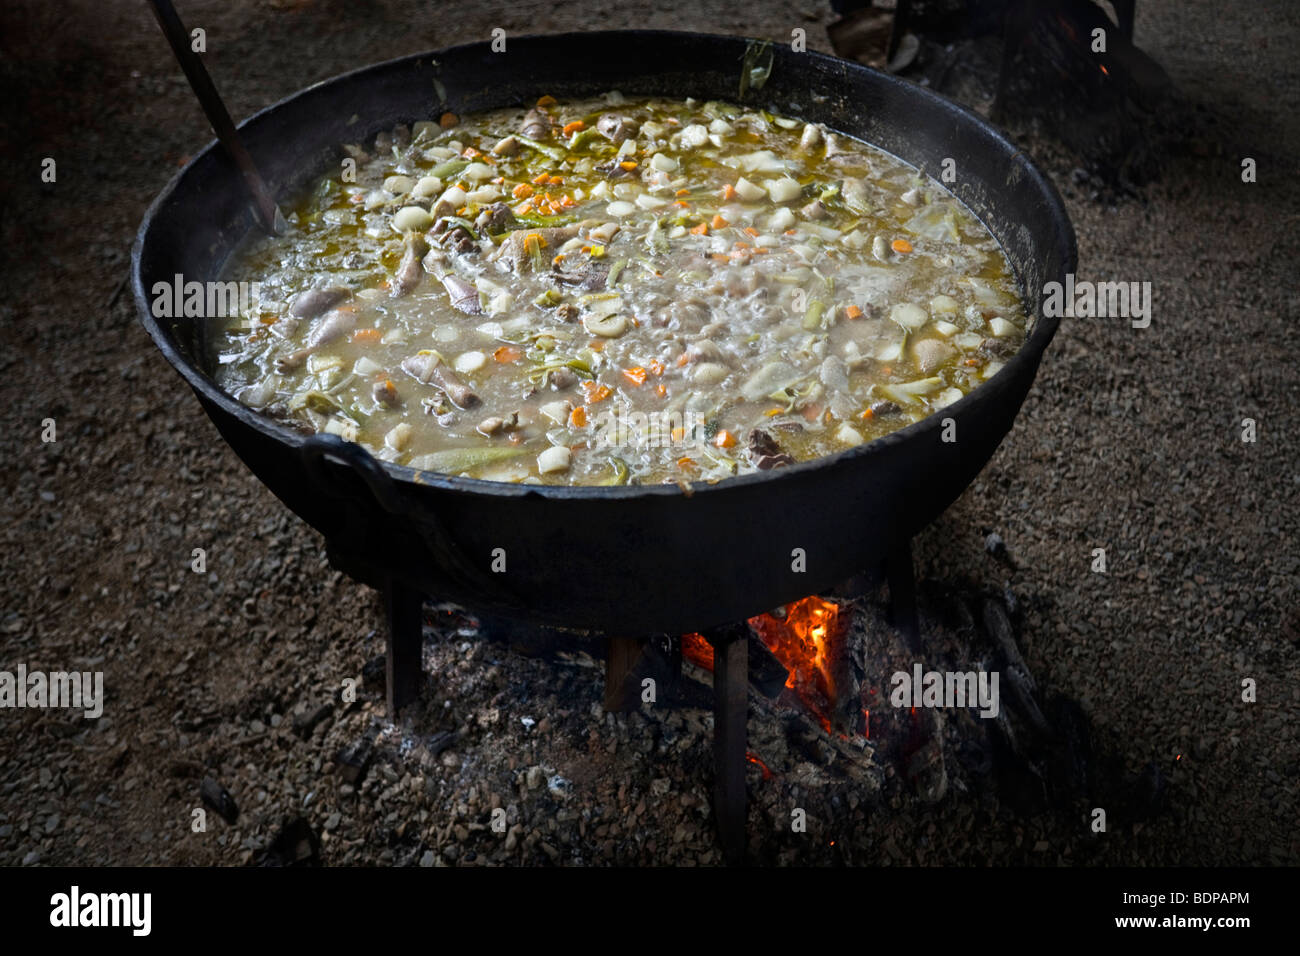 La cuisson au feu de bois d'une soupe de légumes dans une casserole. Cuisson au feu de bois d'une soupe de légumes dans une marmite. Banque D'Images